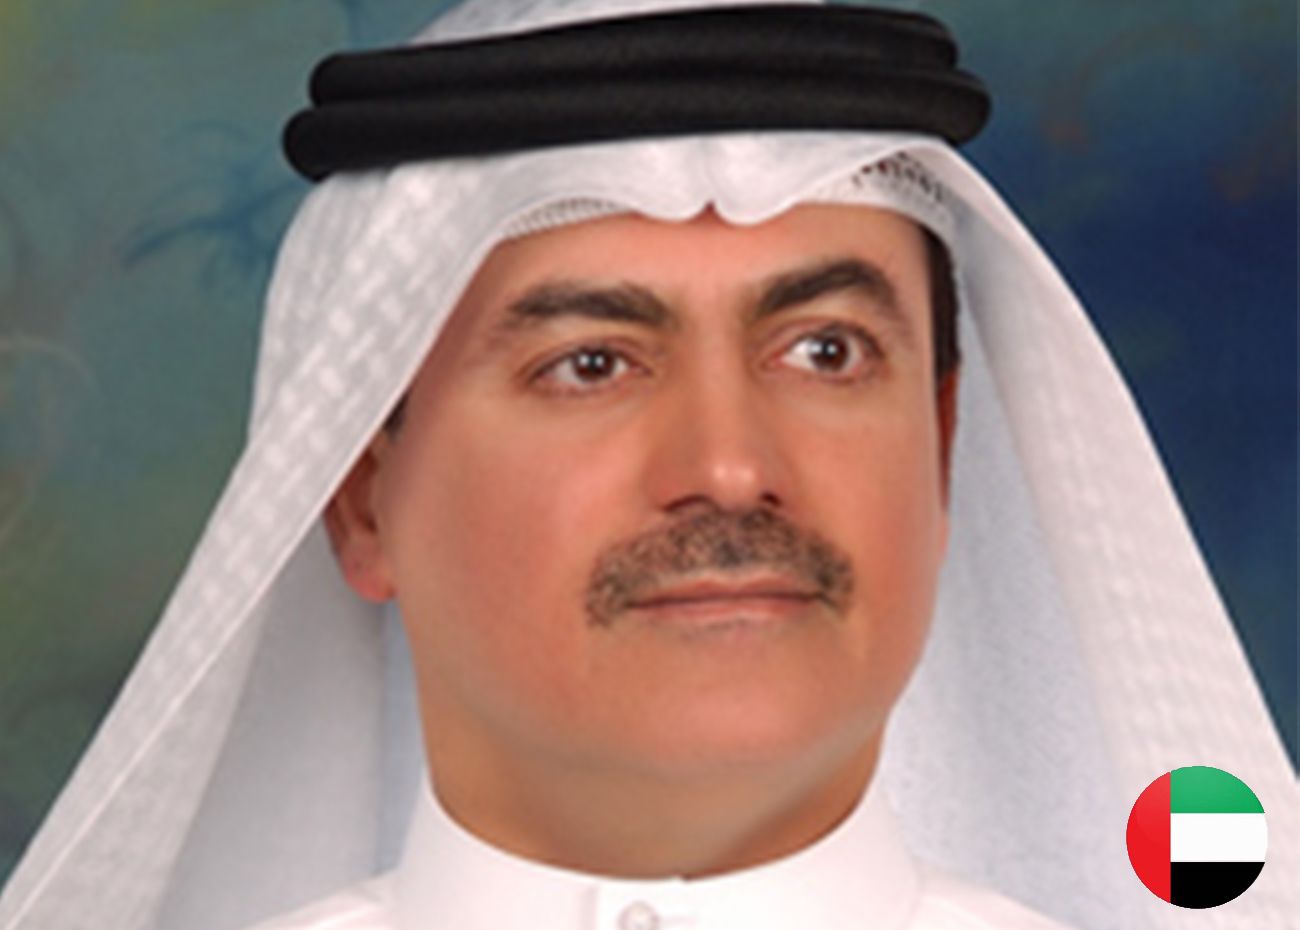 DR. AMIN HUSSAIN AL AMIRI